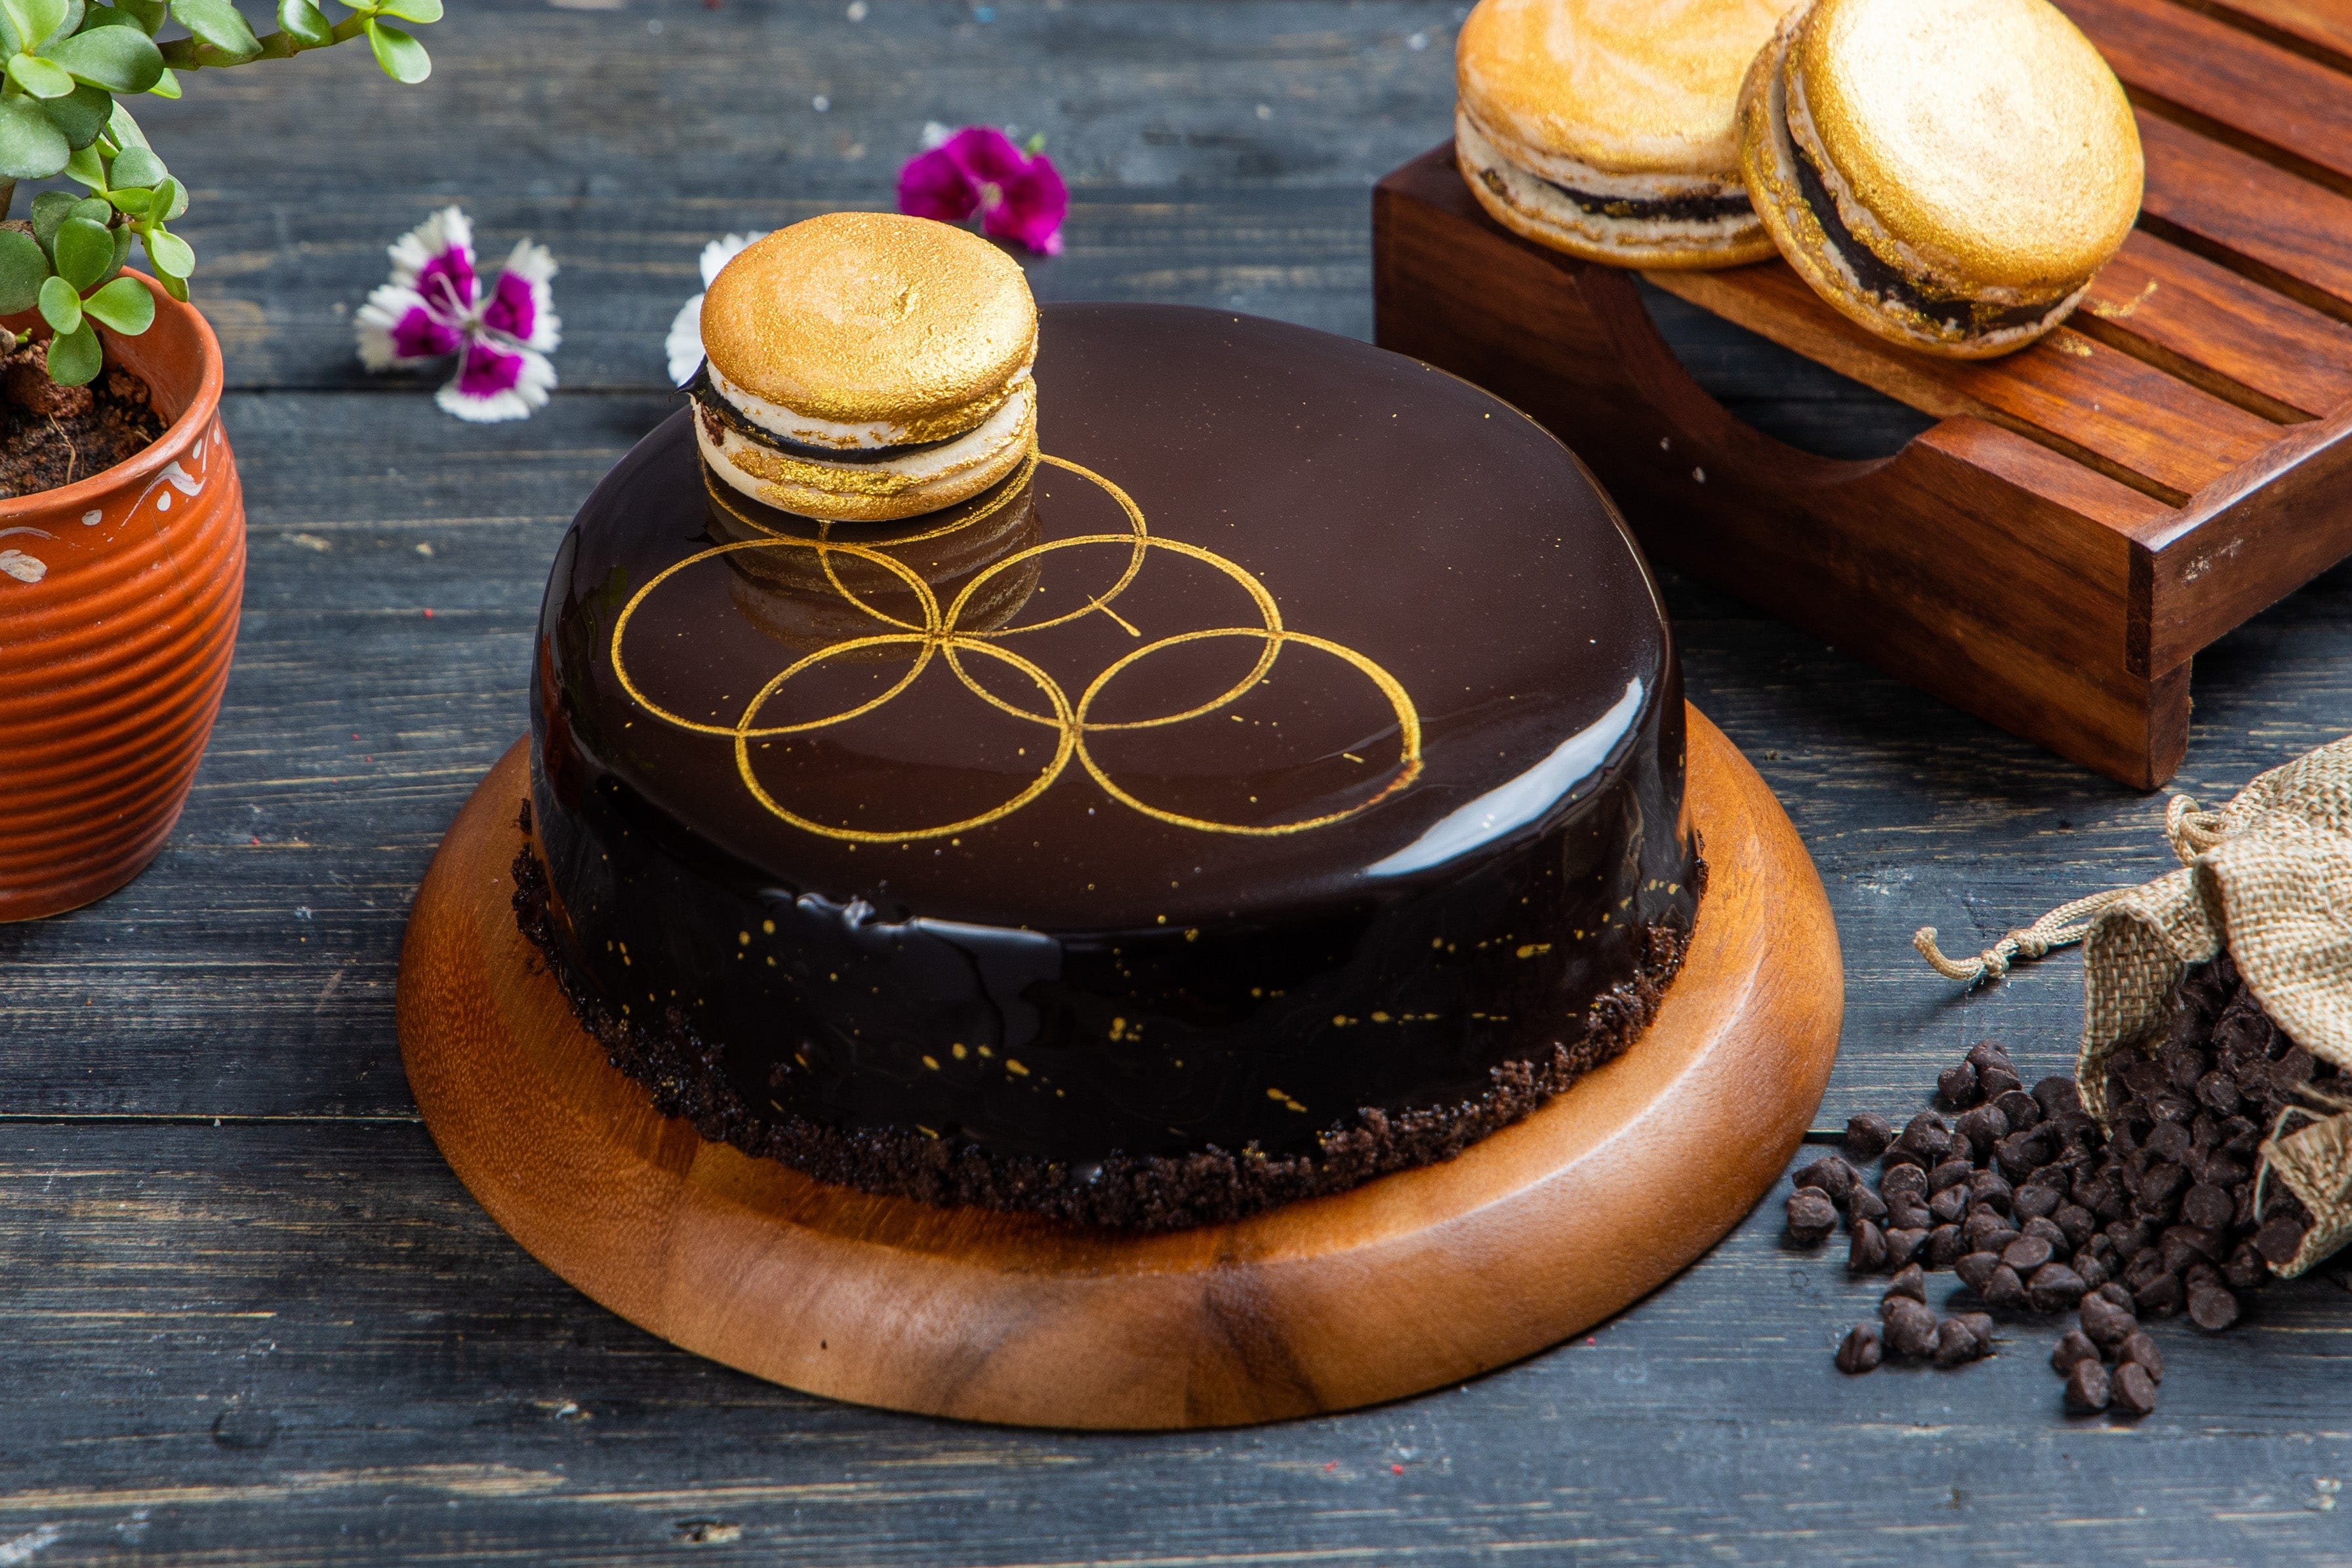 Share 155+ cake palace rajajinagar latest - in.eteachers